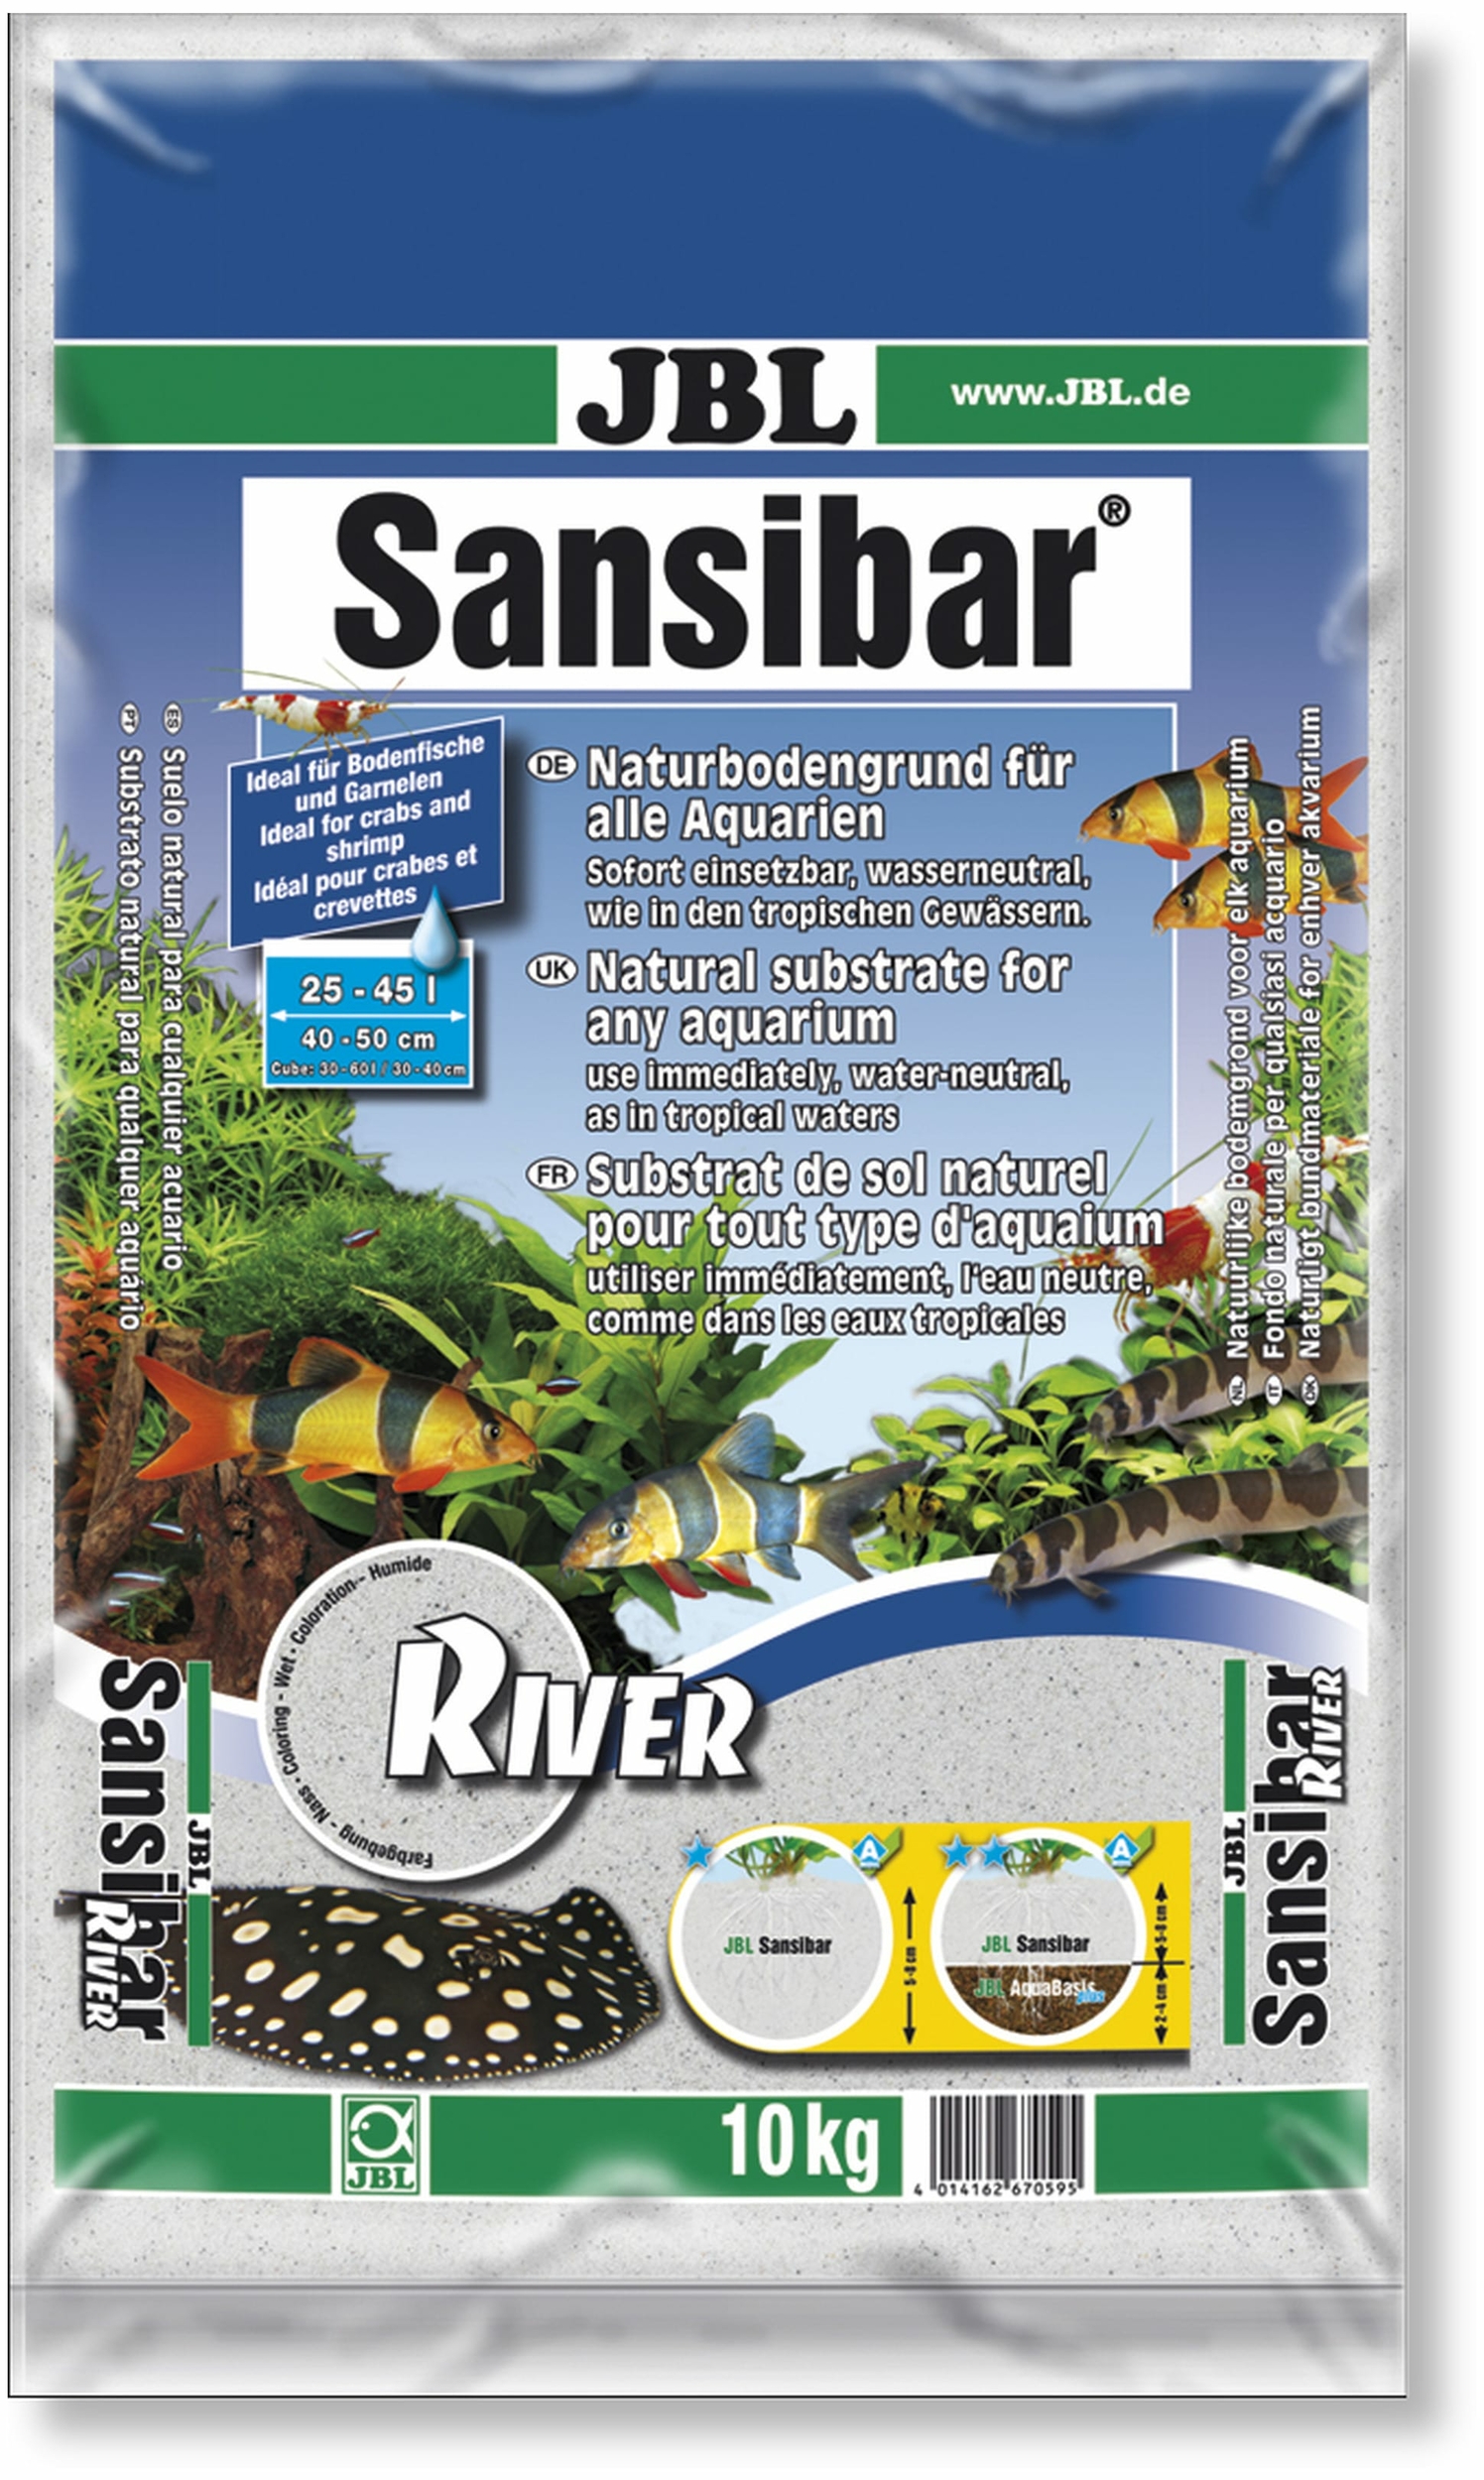 jbl-sansibar-river-10-kg-substrat-de-sol-naturel-fin-clair-pigmente-de-noir-0-8-mm-pour-aquarium-d-eau-douce-min